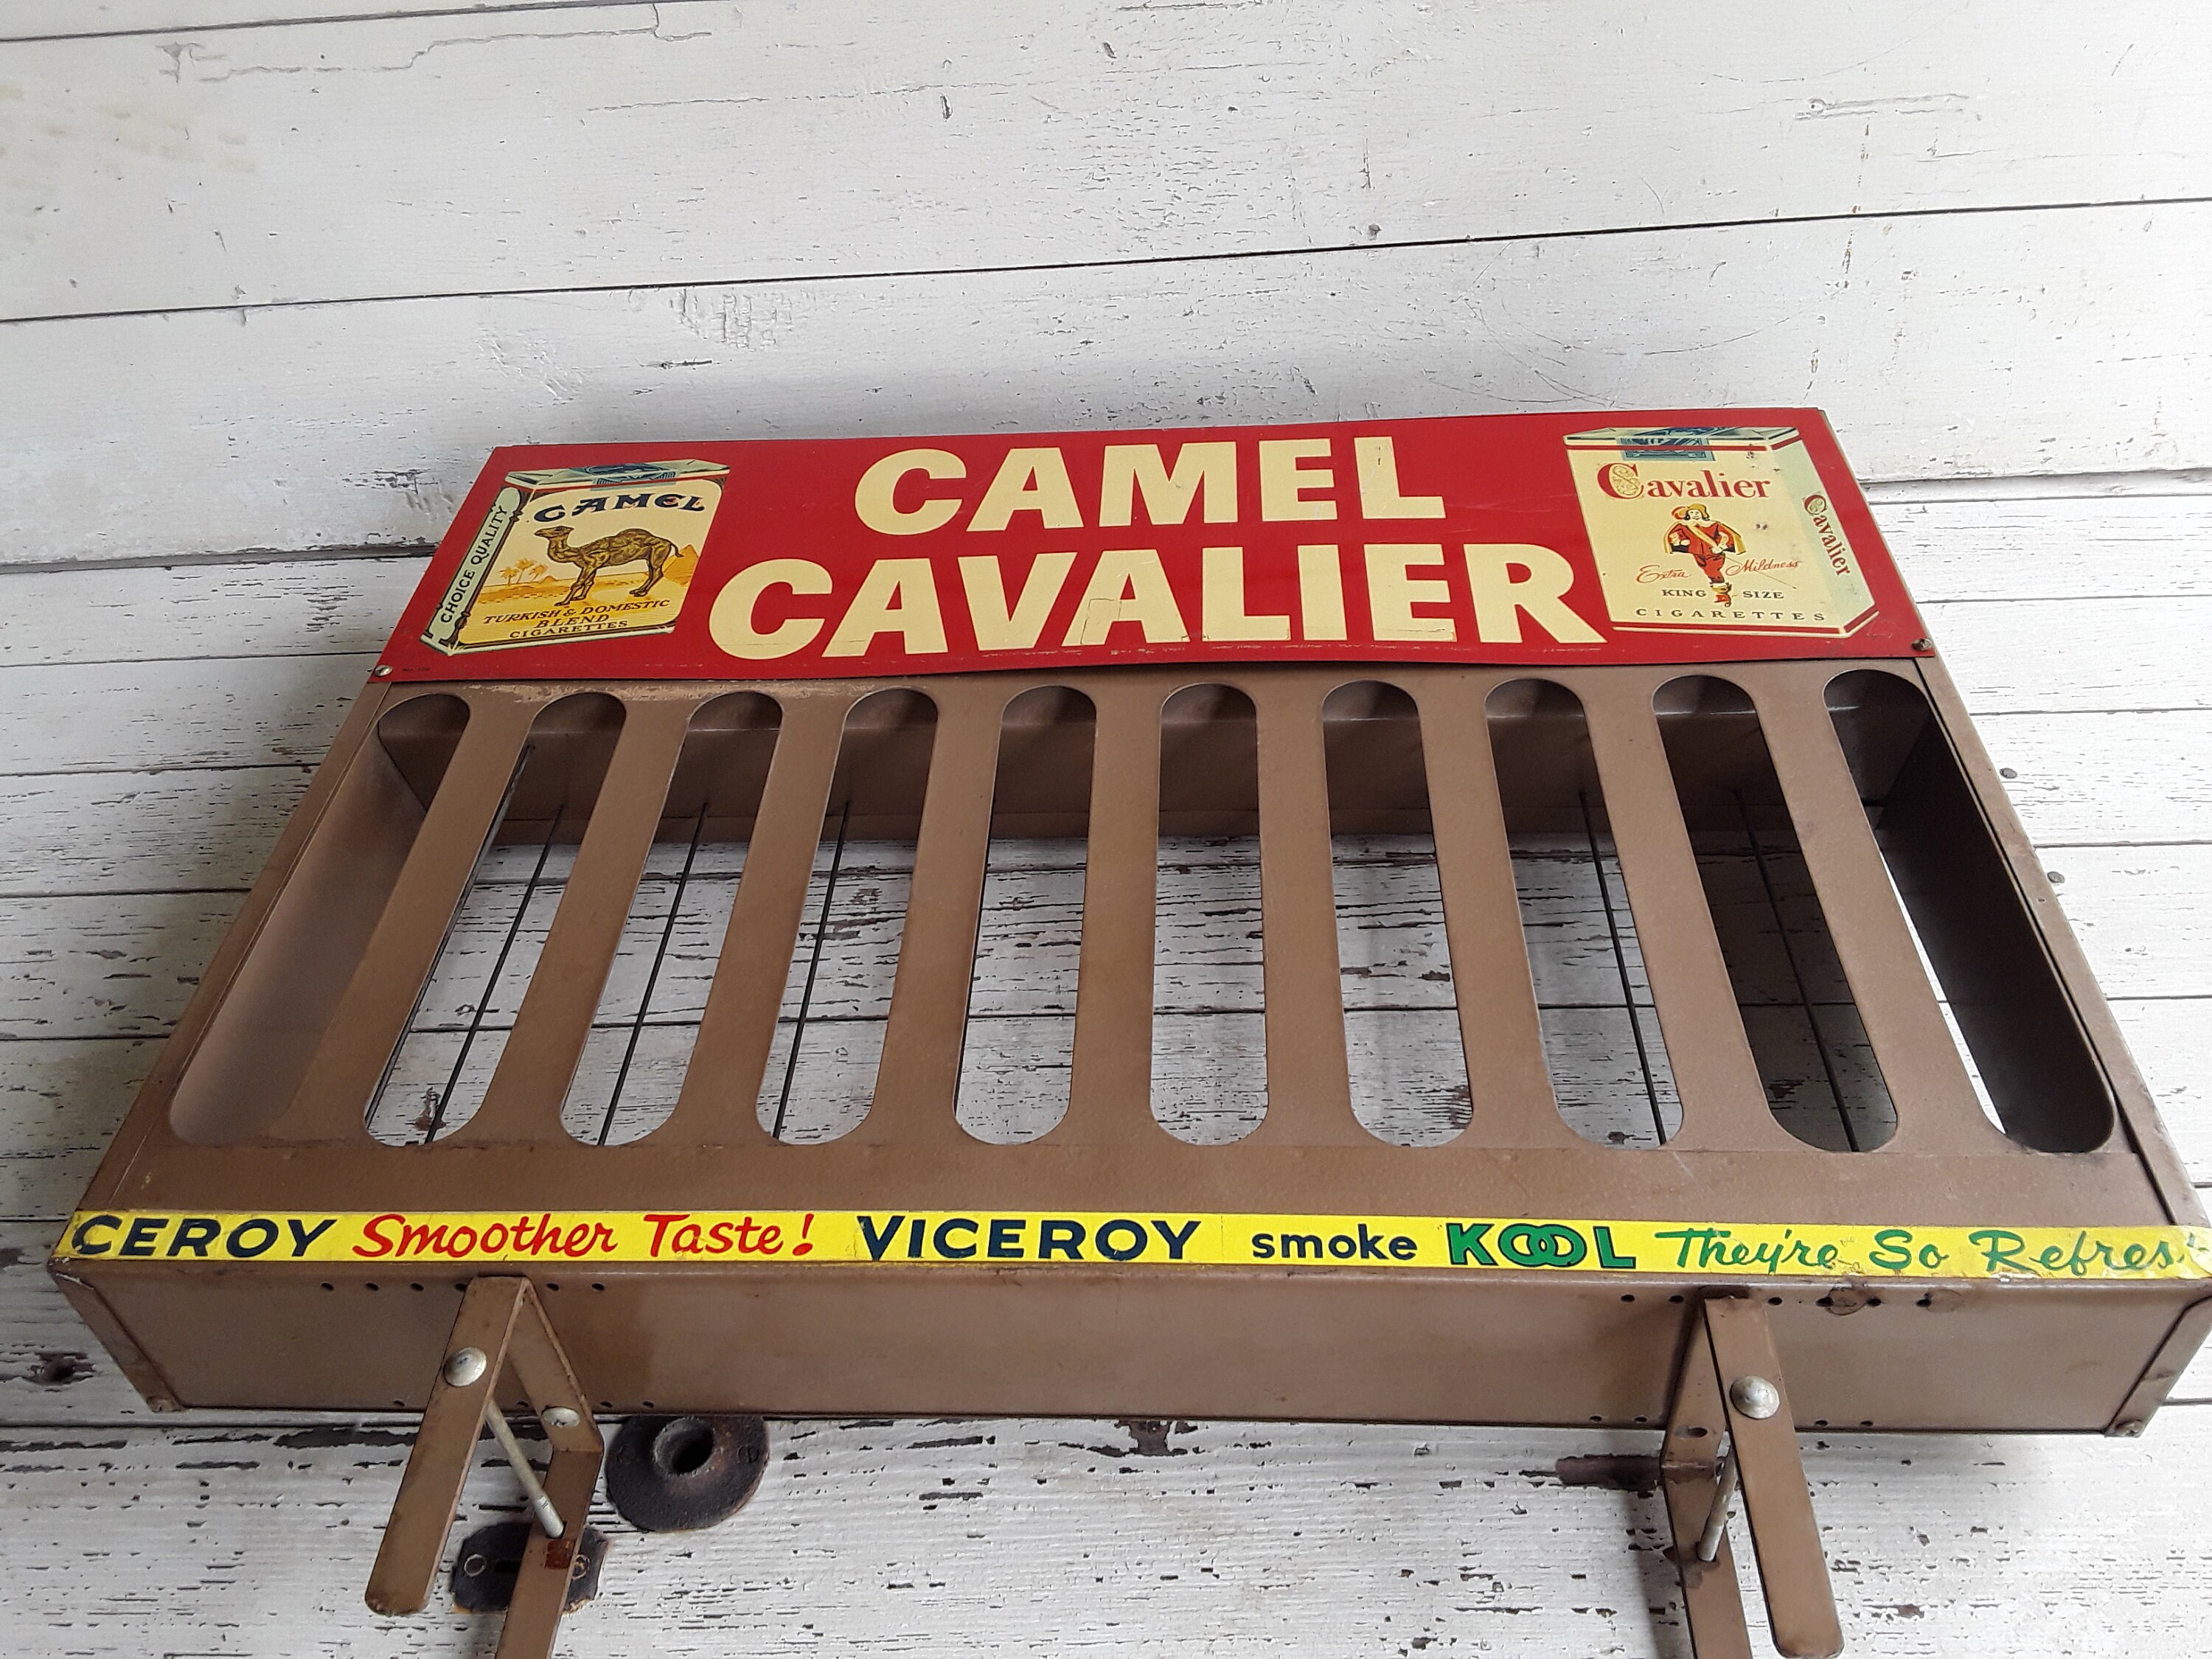 Camel & Cavalier Cigarette Advertising Metal Display Rack, Store